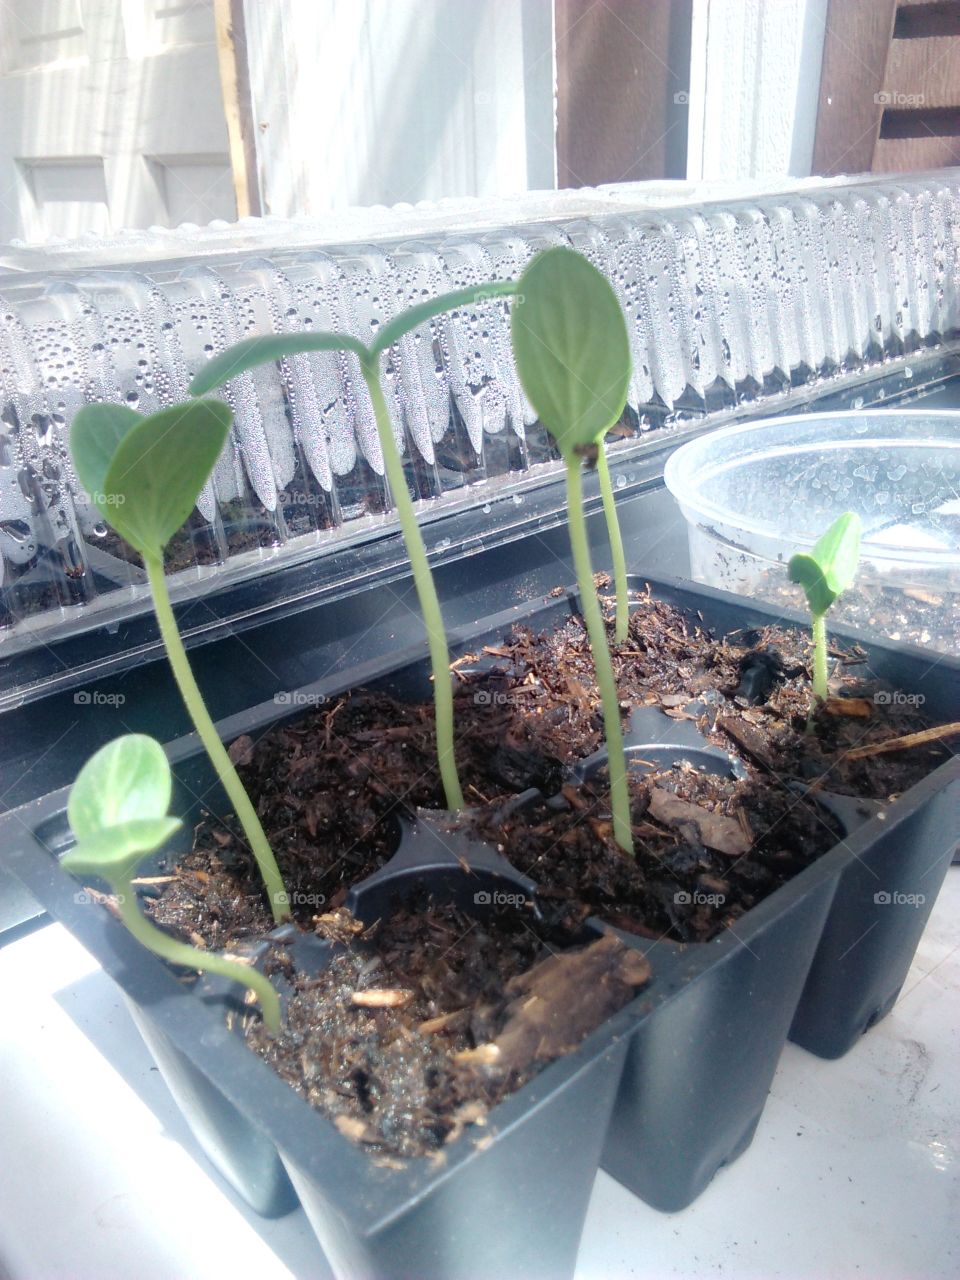 zucchini growing .